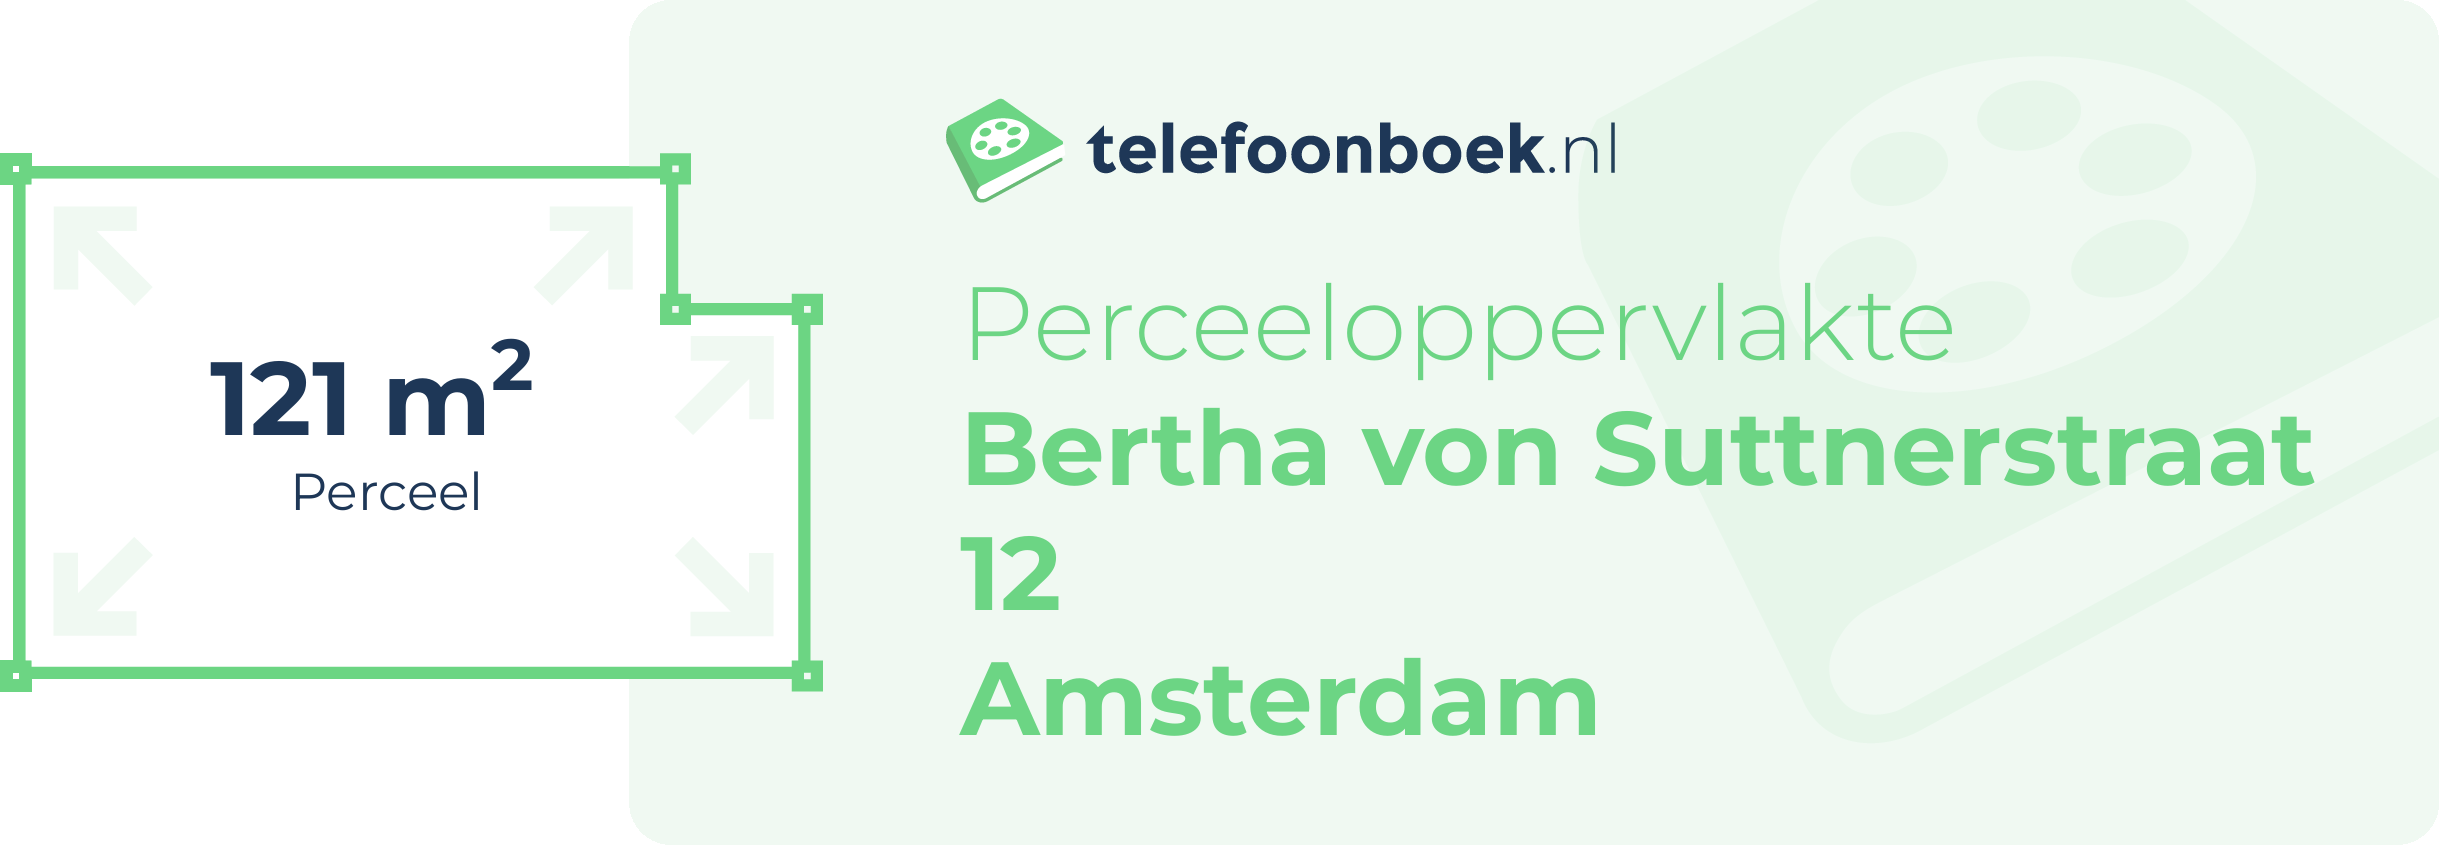 Perceeloppervlakte Bertha Von Suttnerstraat 12 Amsterdam